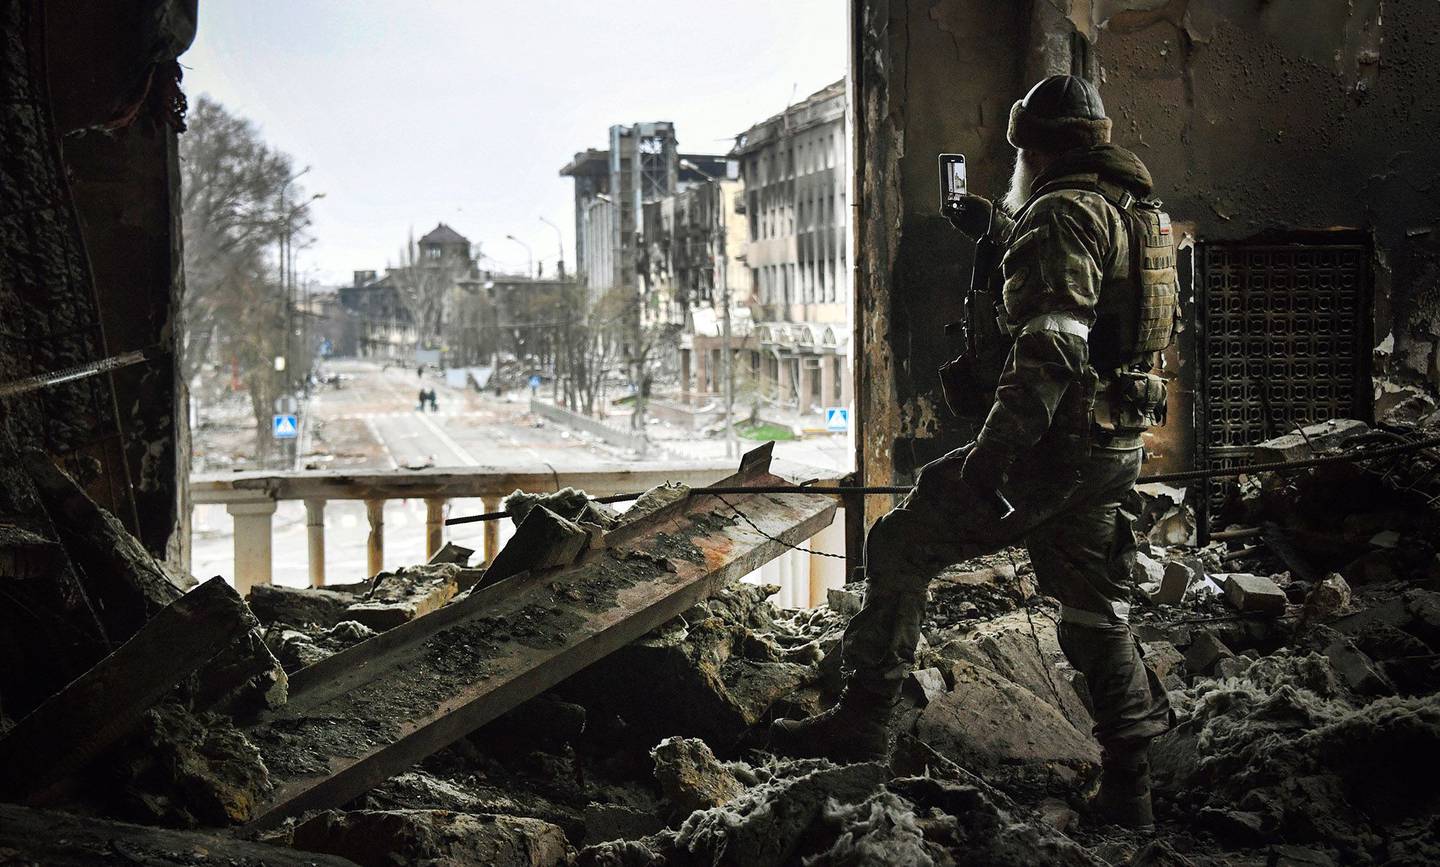 Un soldado ruso patrulla en el teatro dramático de Mariúpol, bombardeado el pasado 16 de marzo, el 12 de abril de 2022. Fotógrafo: Alexander Nemenov